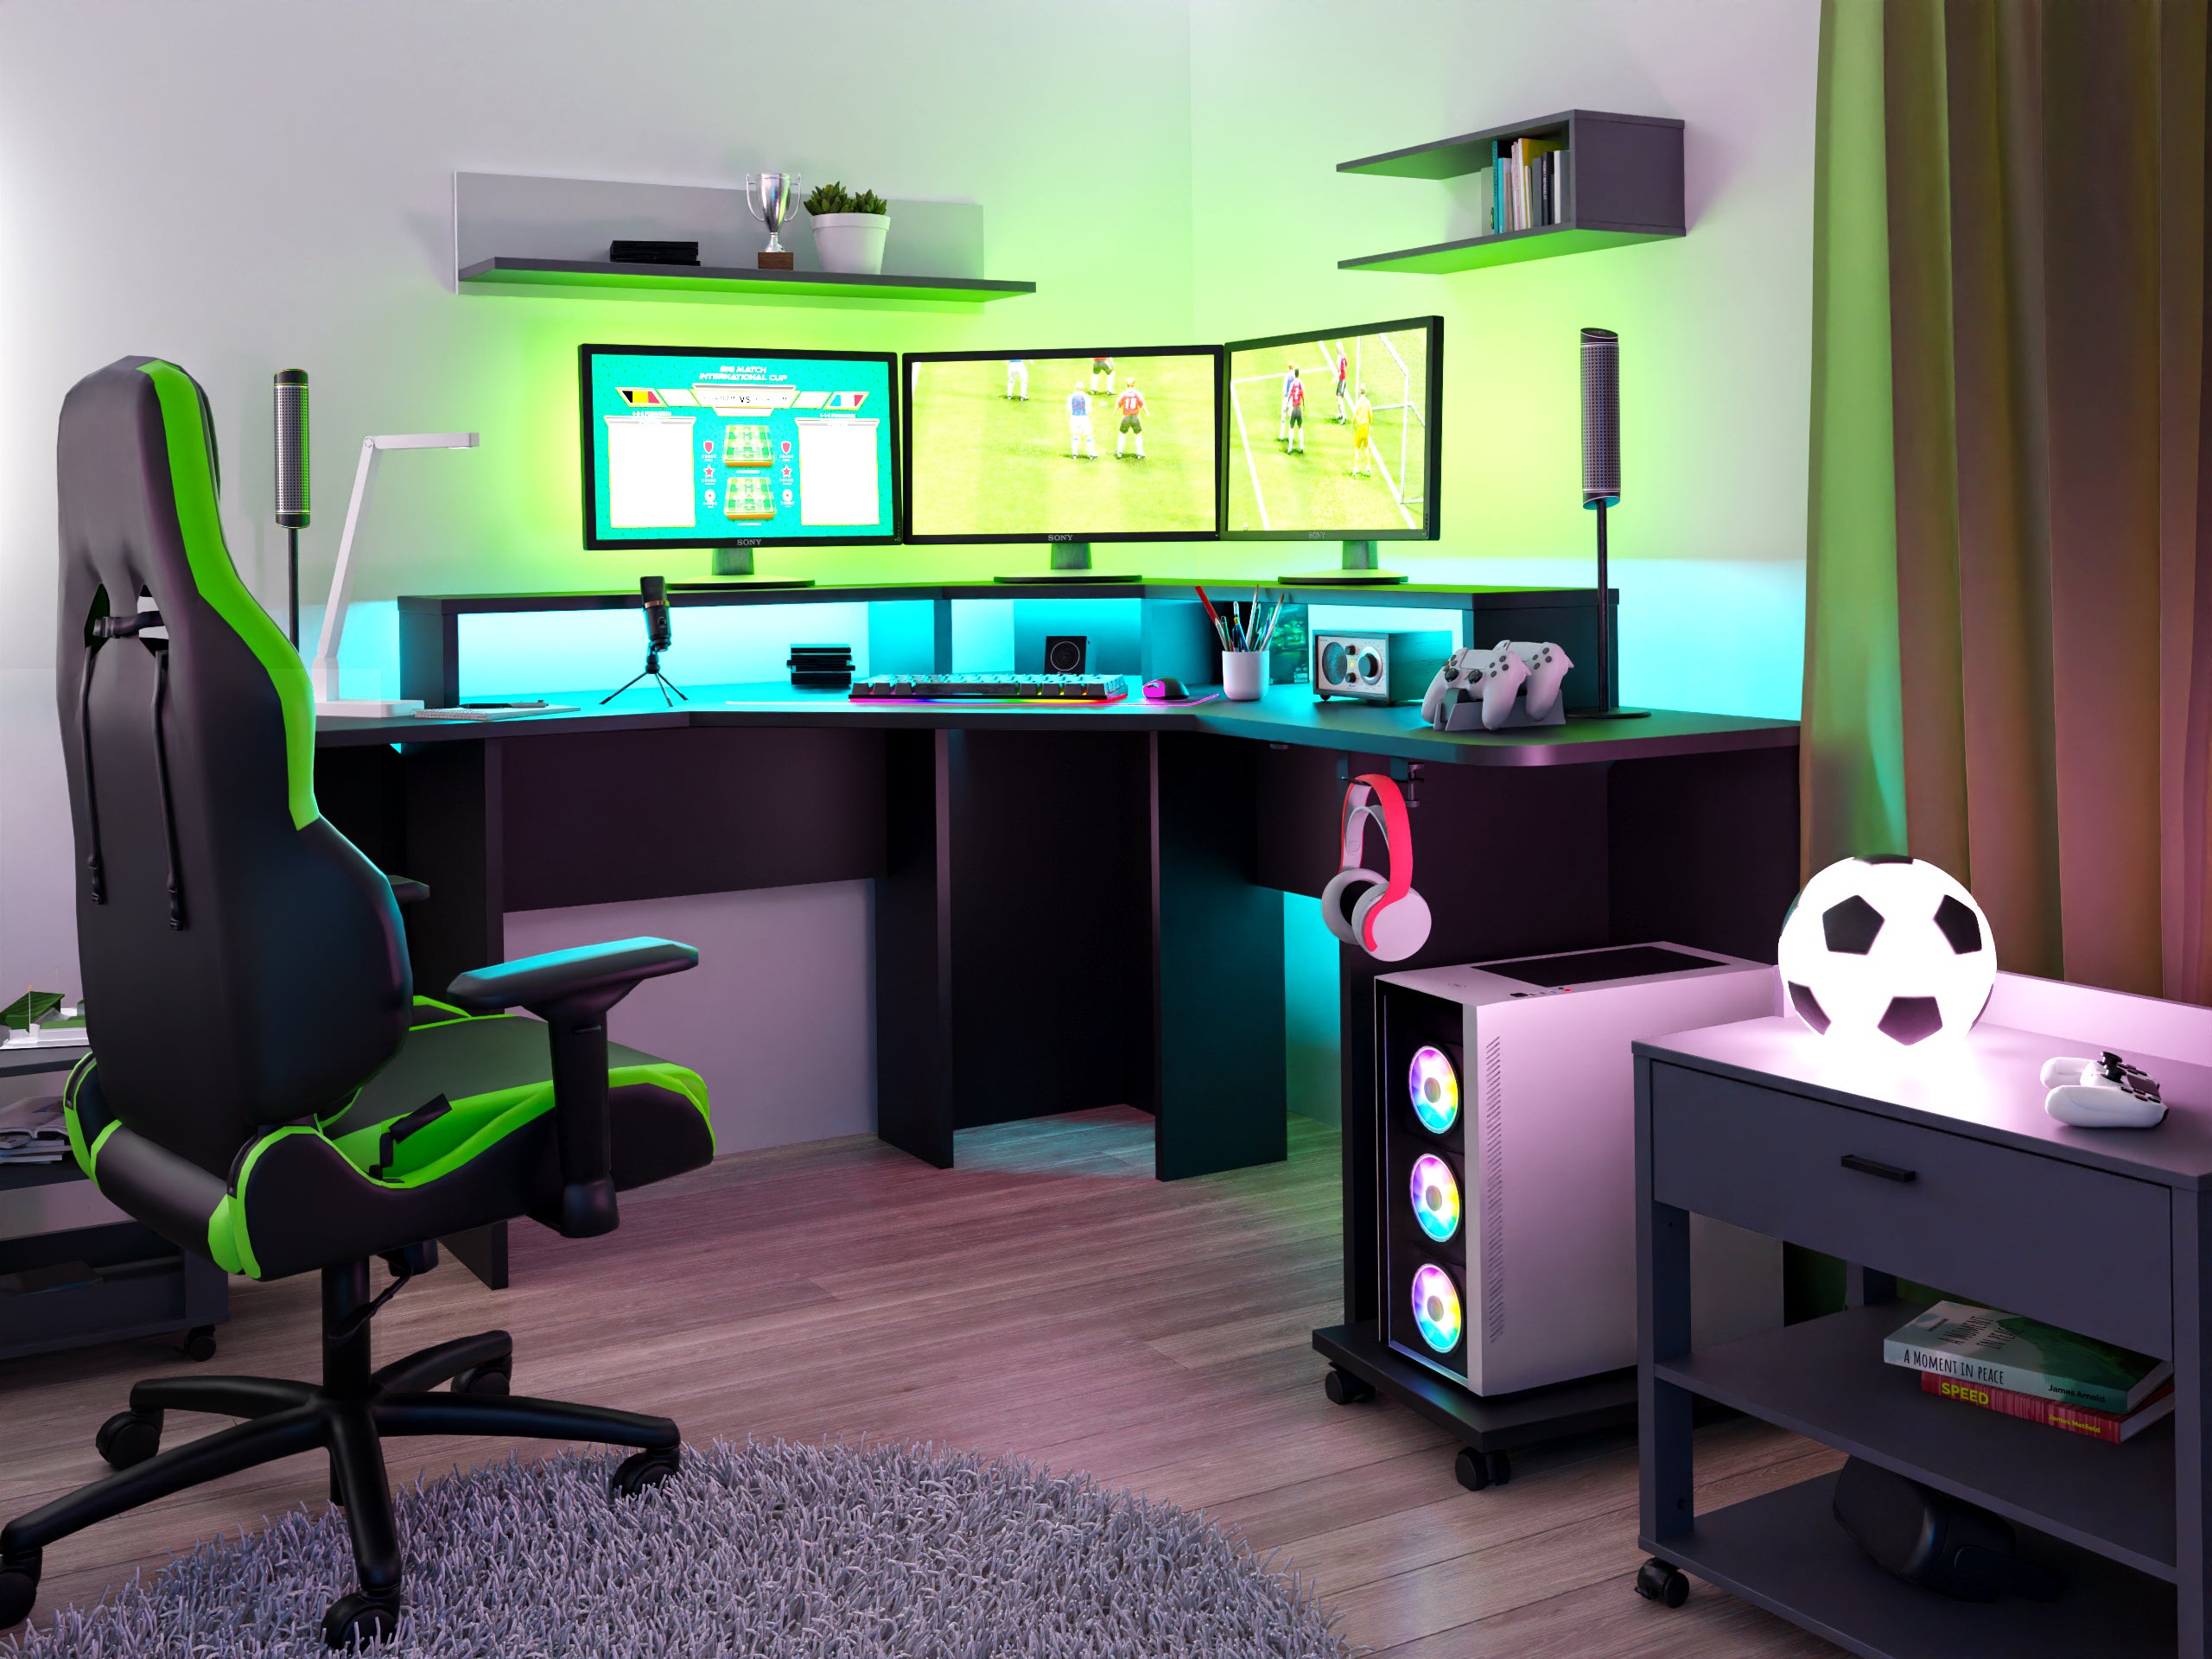 Pokój z biurkiem narożnym - jak urządzić? Narożne biurko gamingowe w pokoju gamingowym, żółto niebieskie oświetlenie LED, półki wiszące, kontener na kółkach, fotel gamingowy